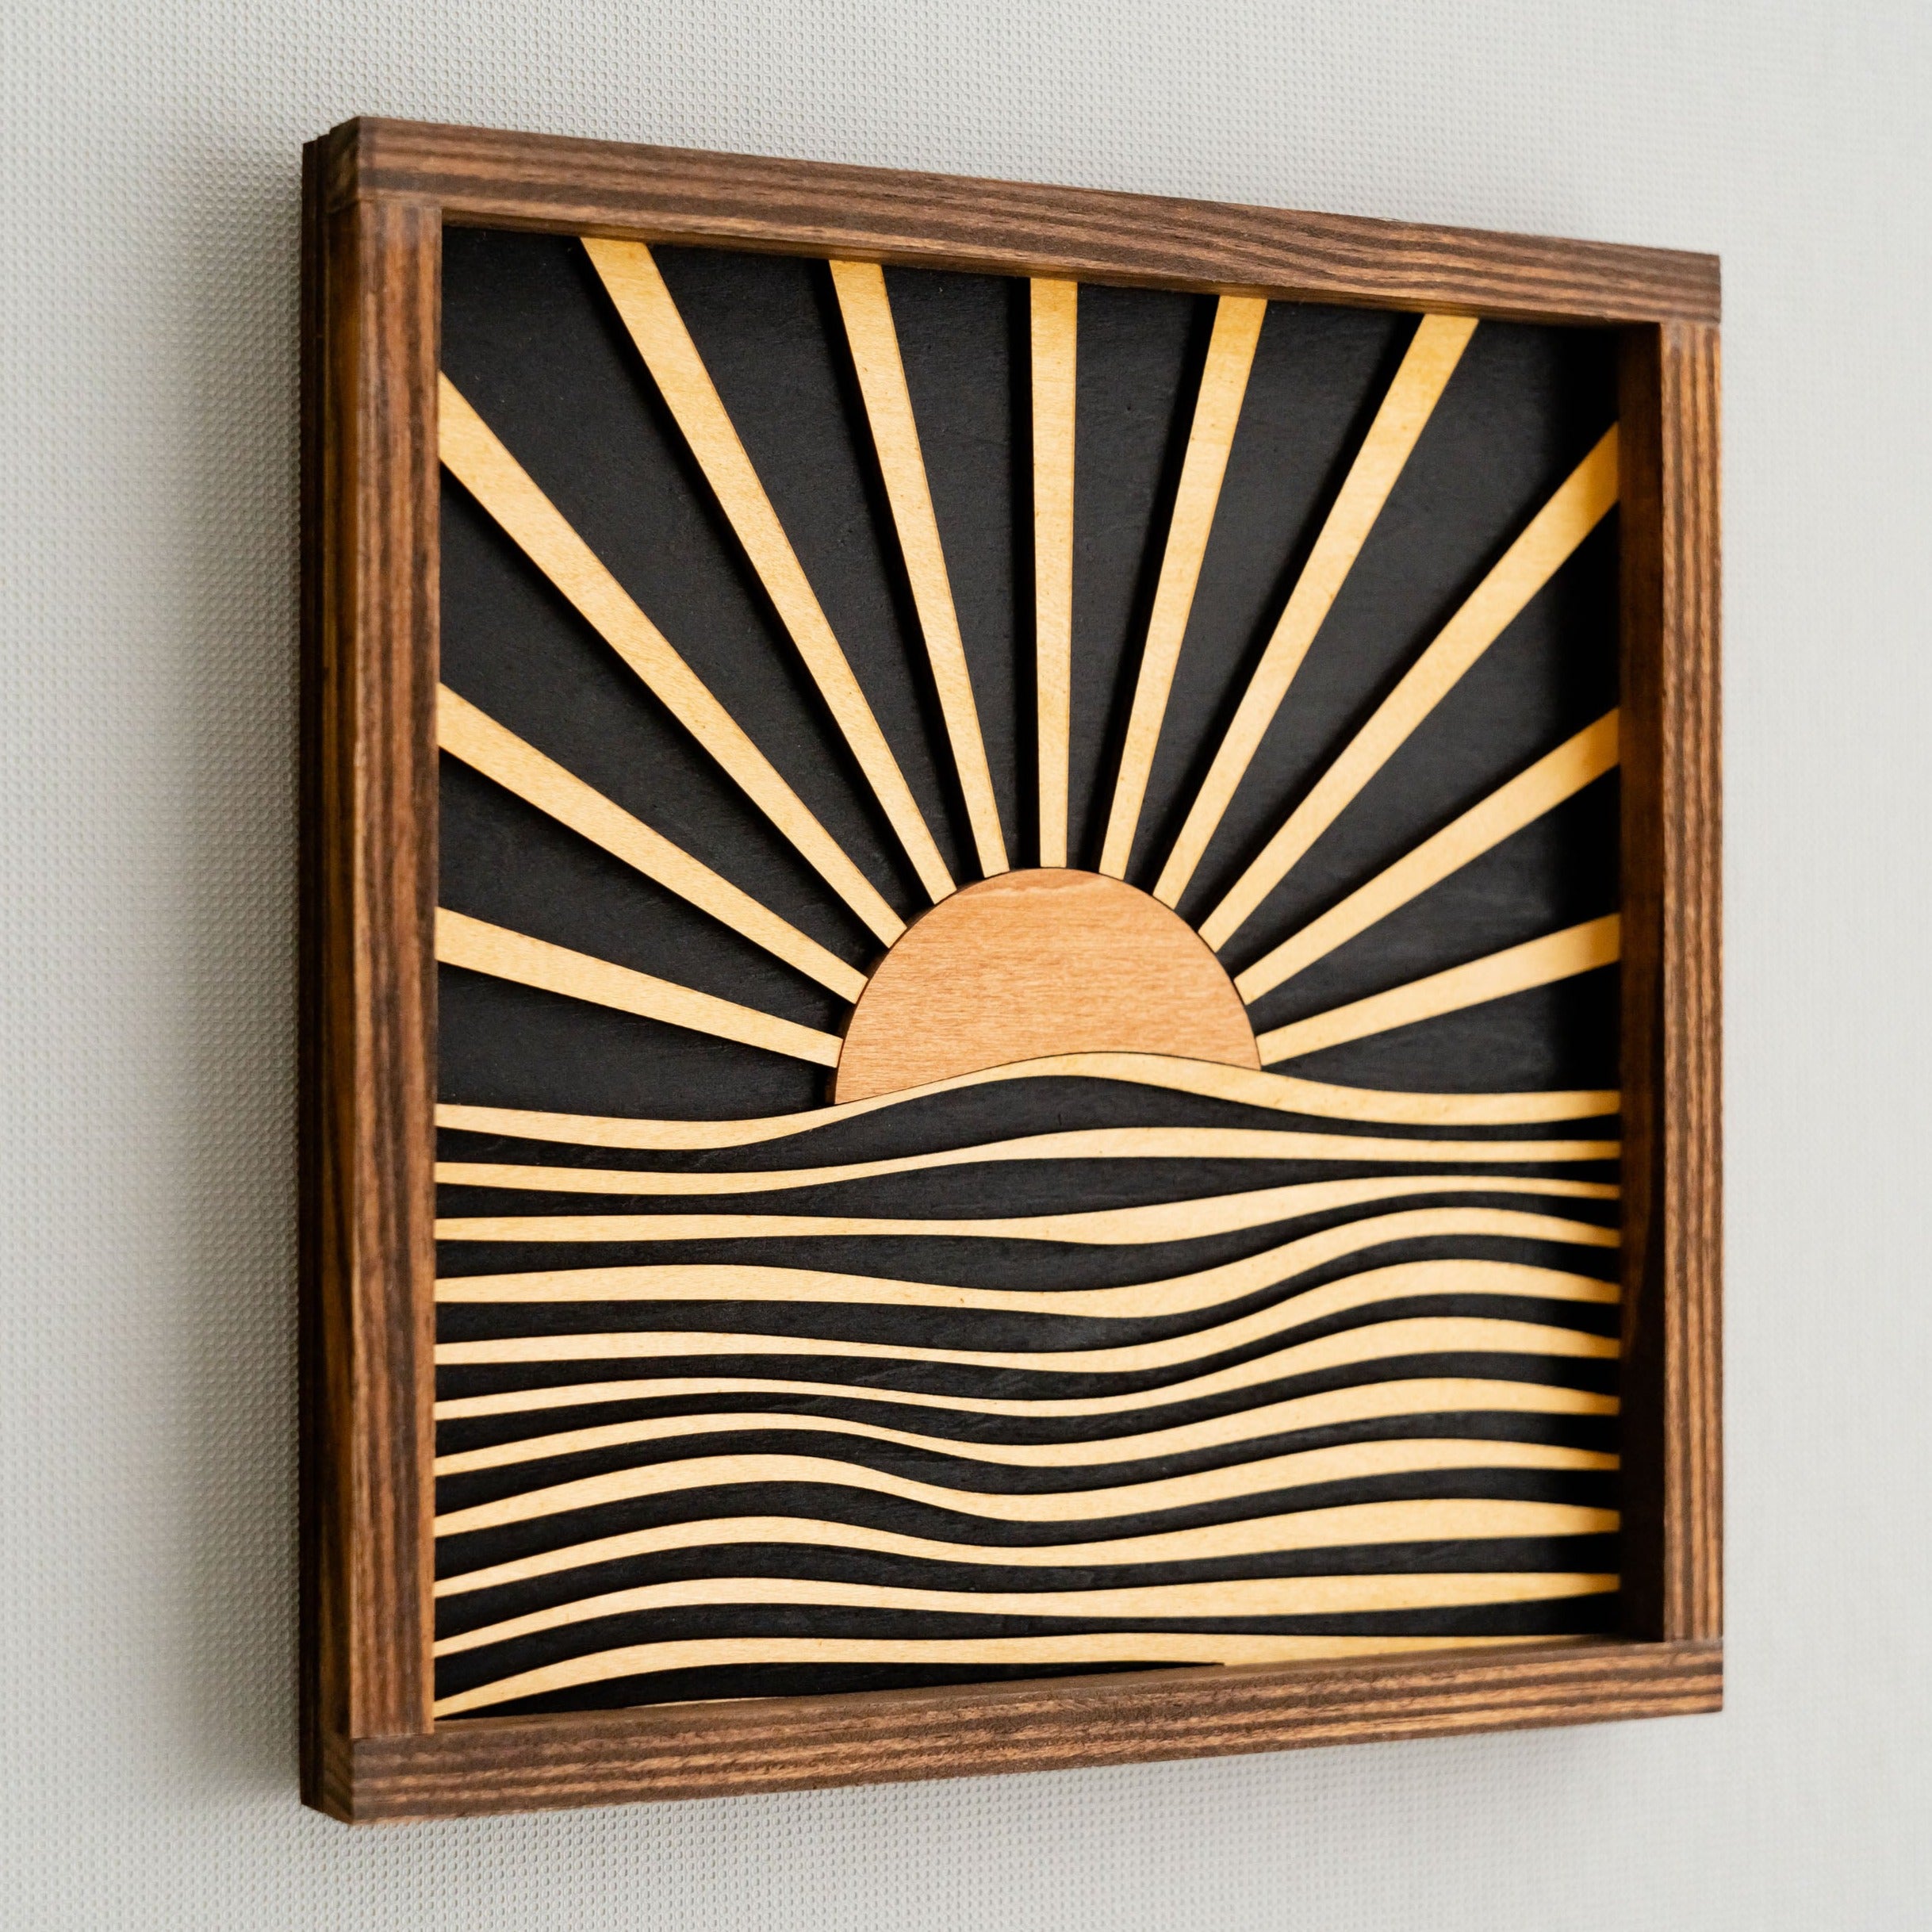 Handcrafted Boho Sunburst Wood Art for Vibrant Home Decor